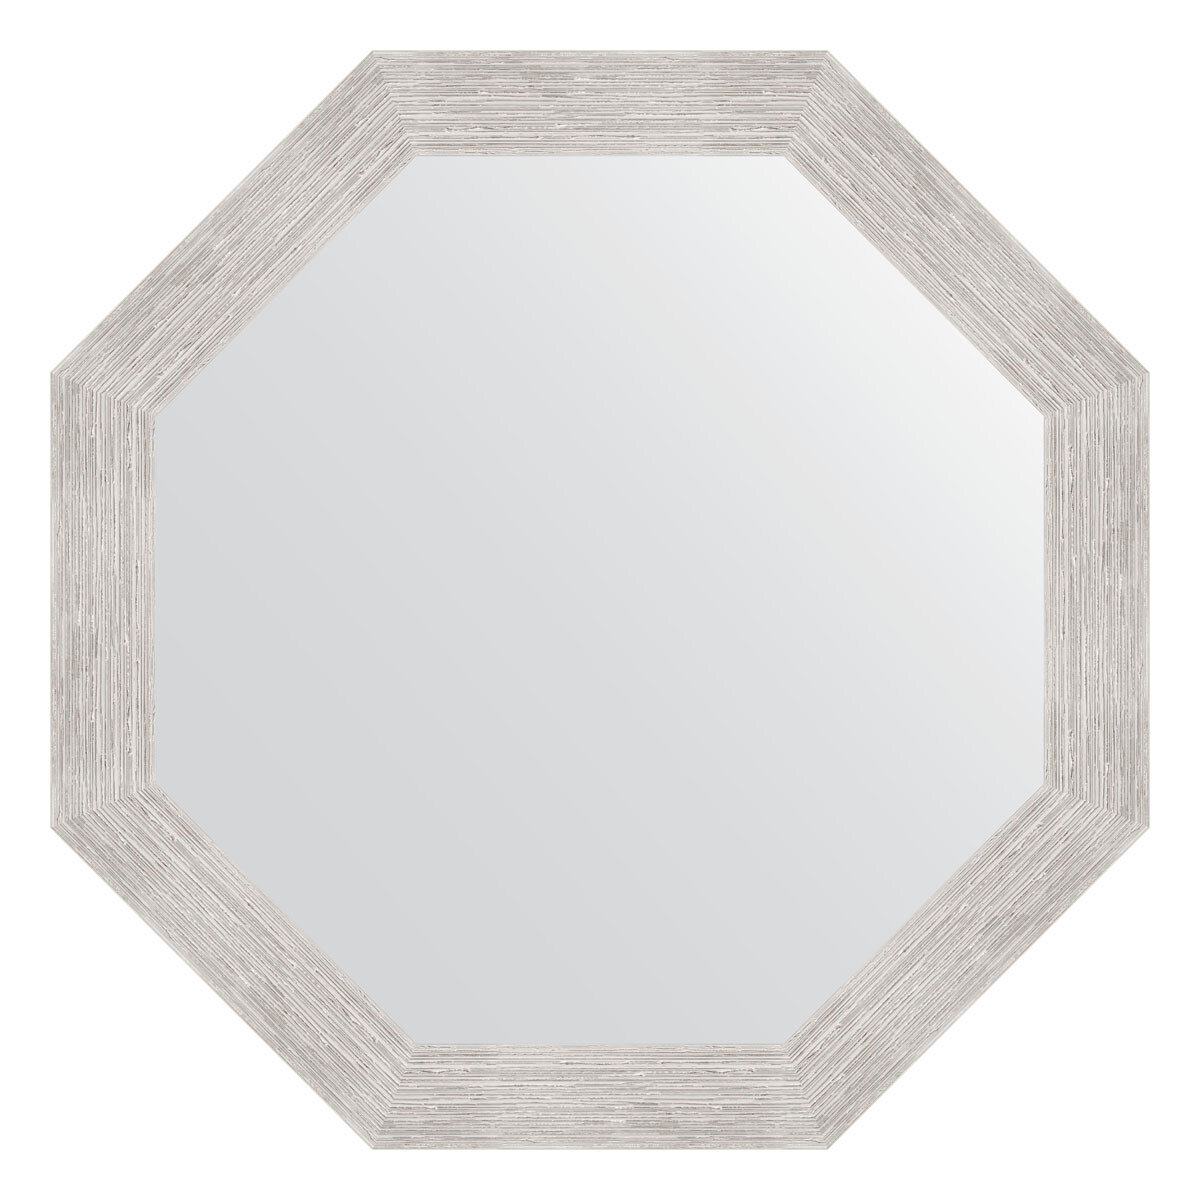 Зеркало в багетной раме - серебряный дождь 70 mm (73,0 Х 73,0 cm) (EVOFORM)